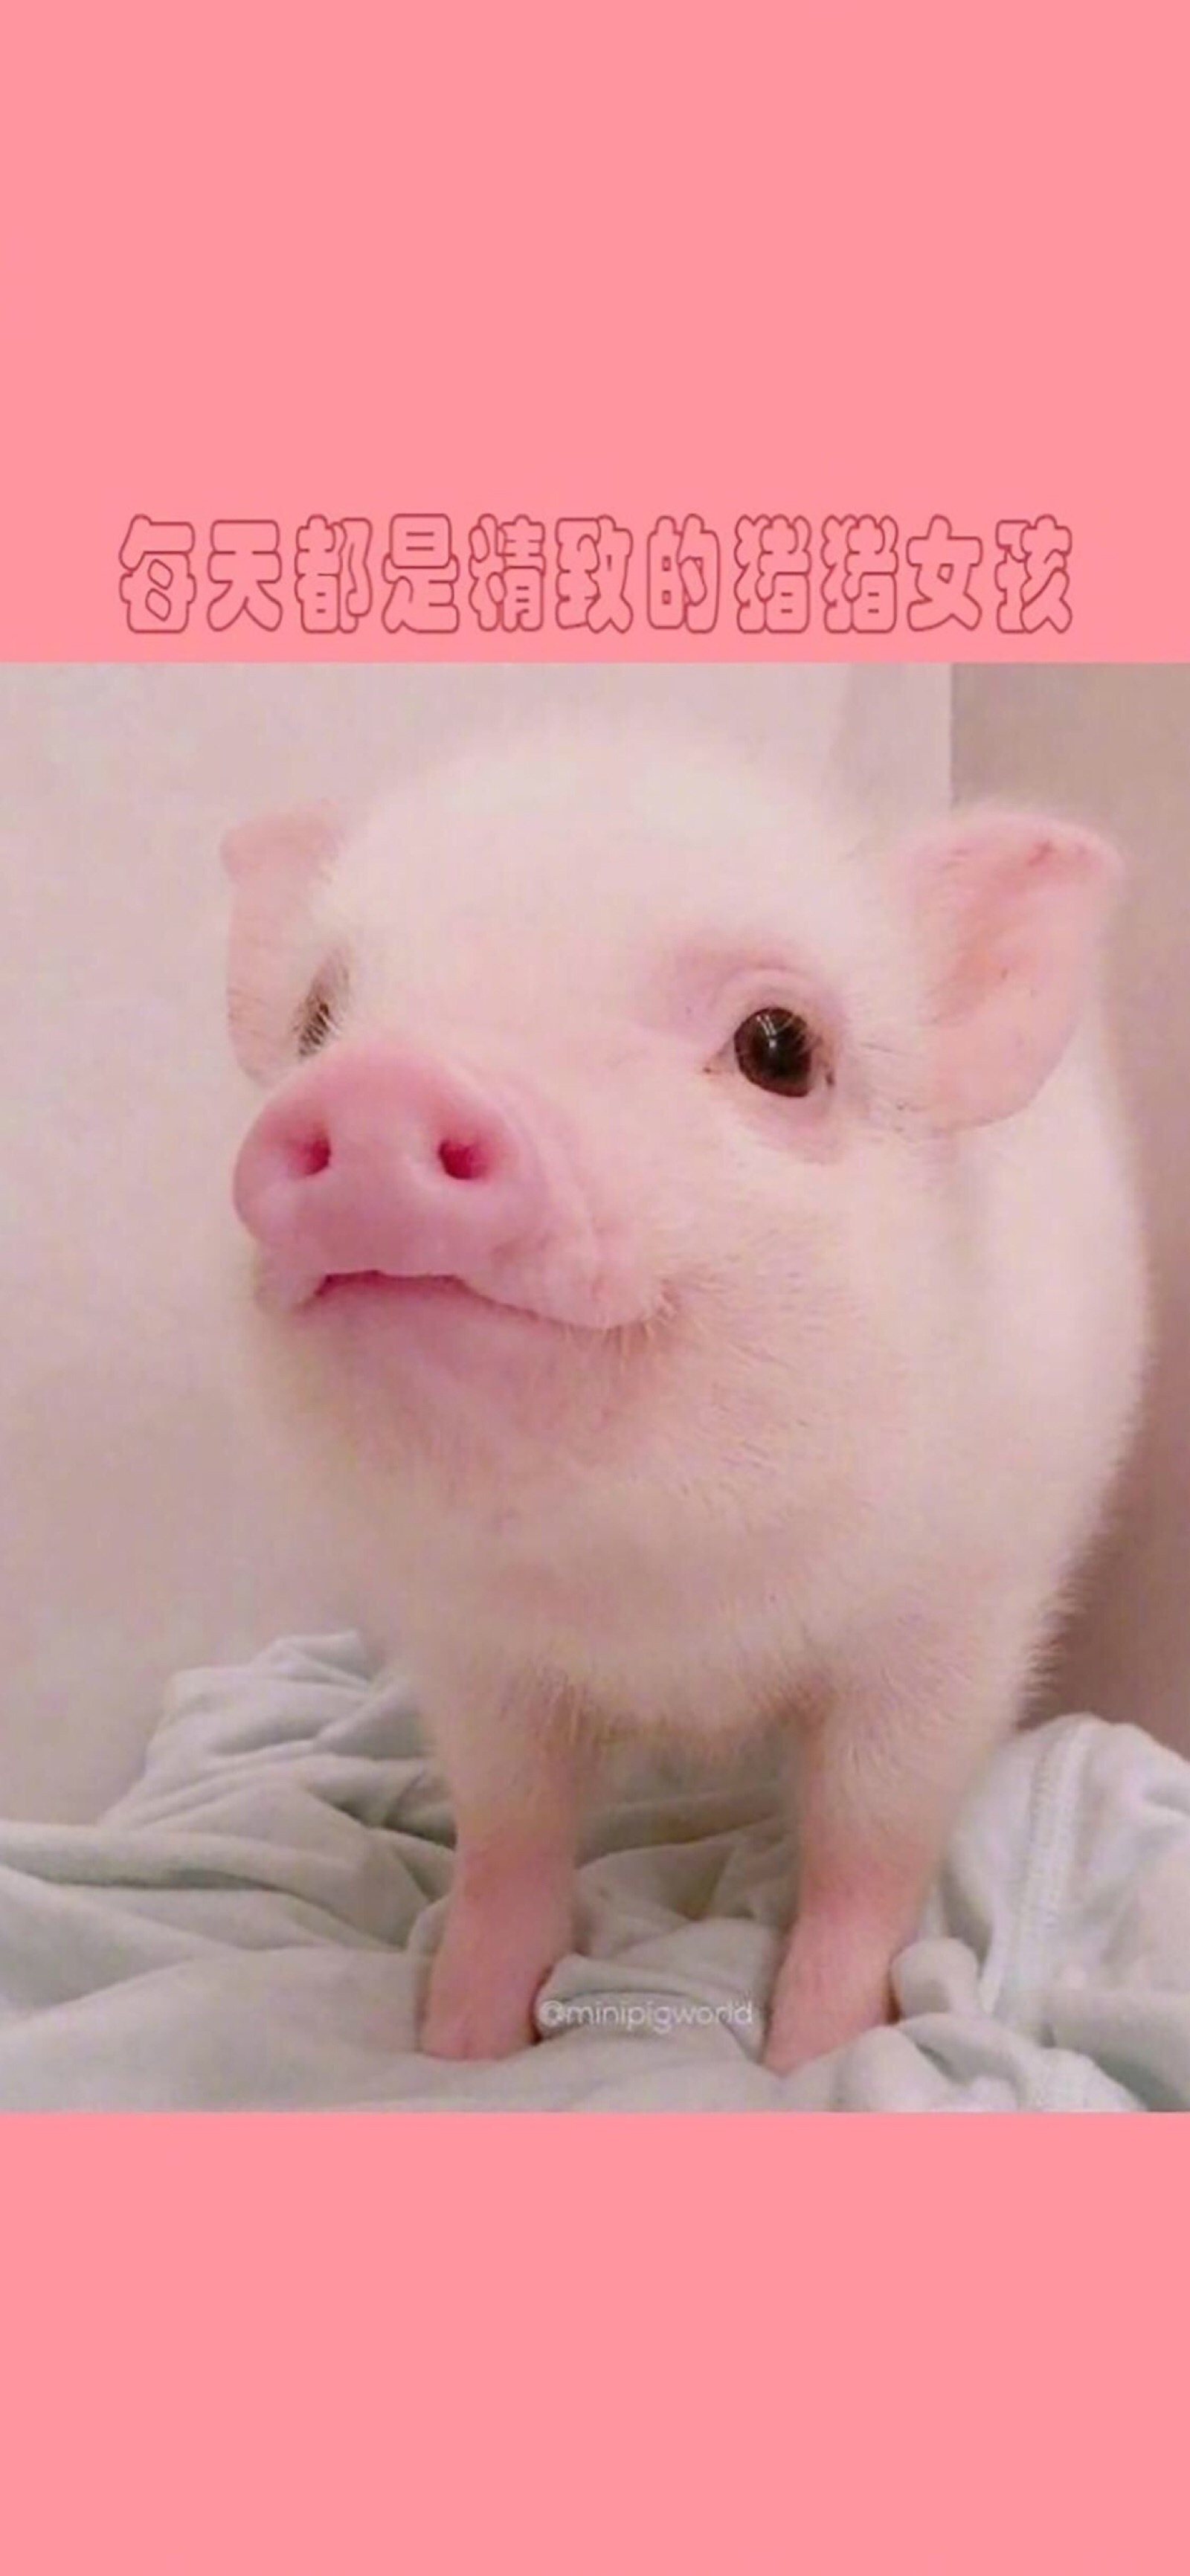 可爱小猪的照片 萌系图片